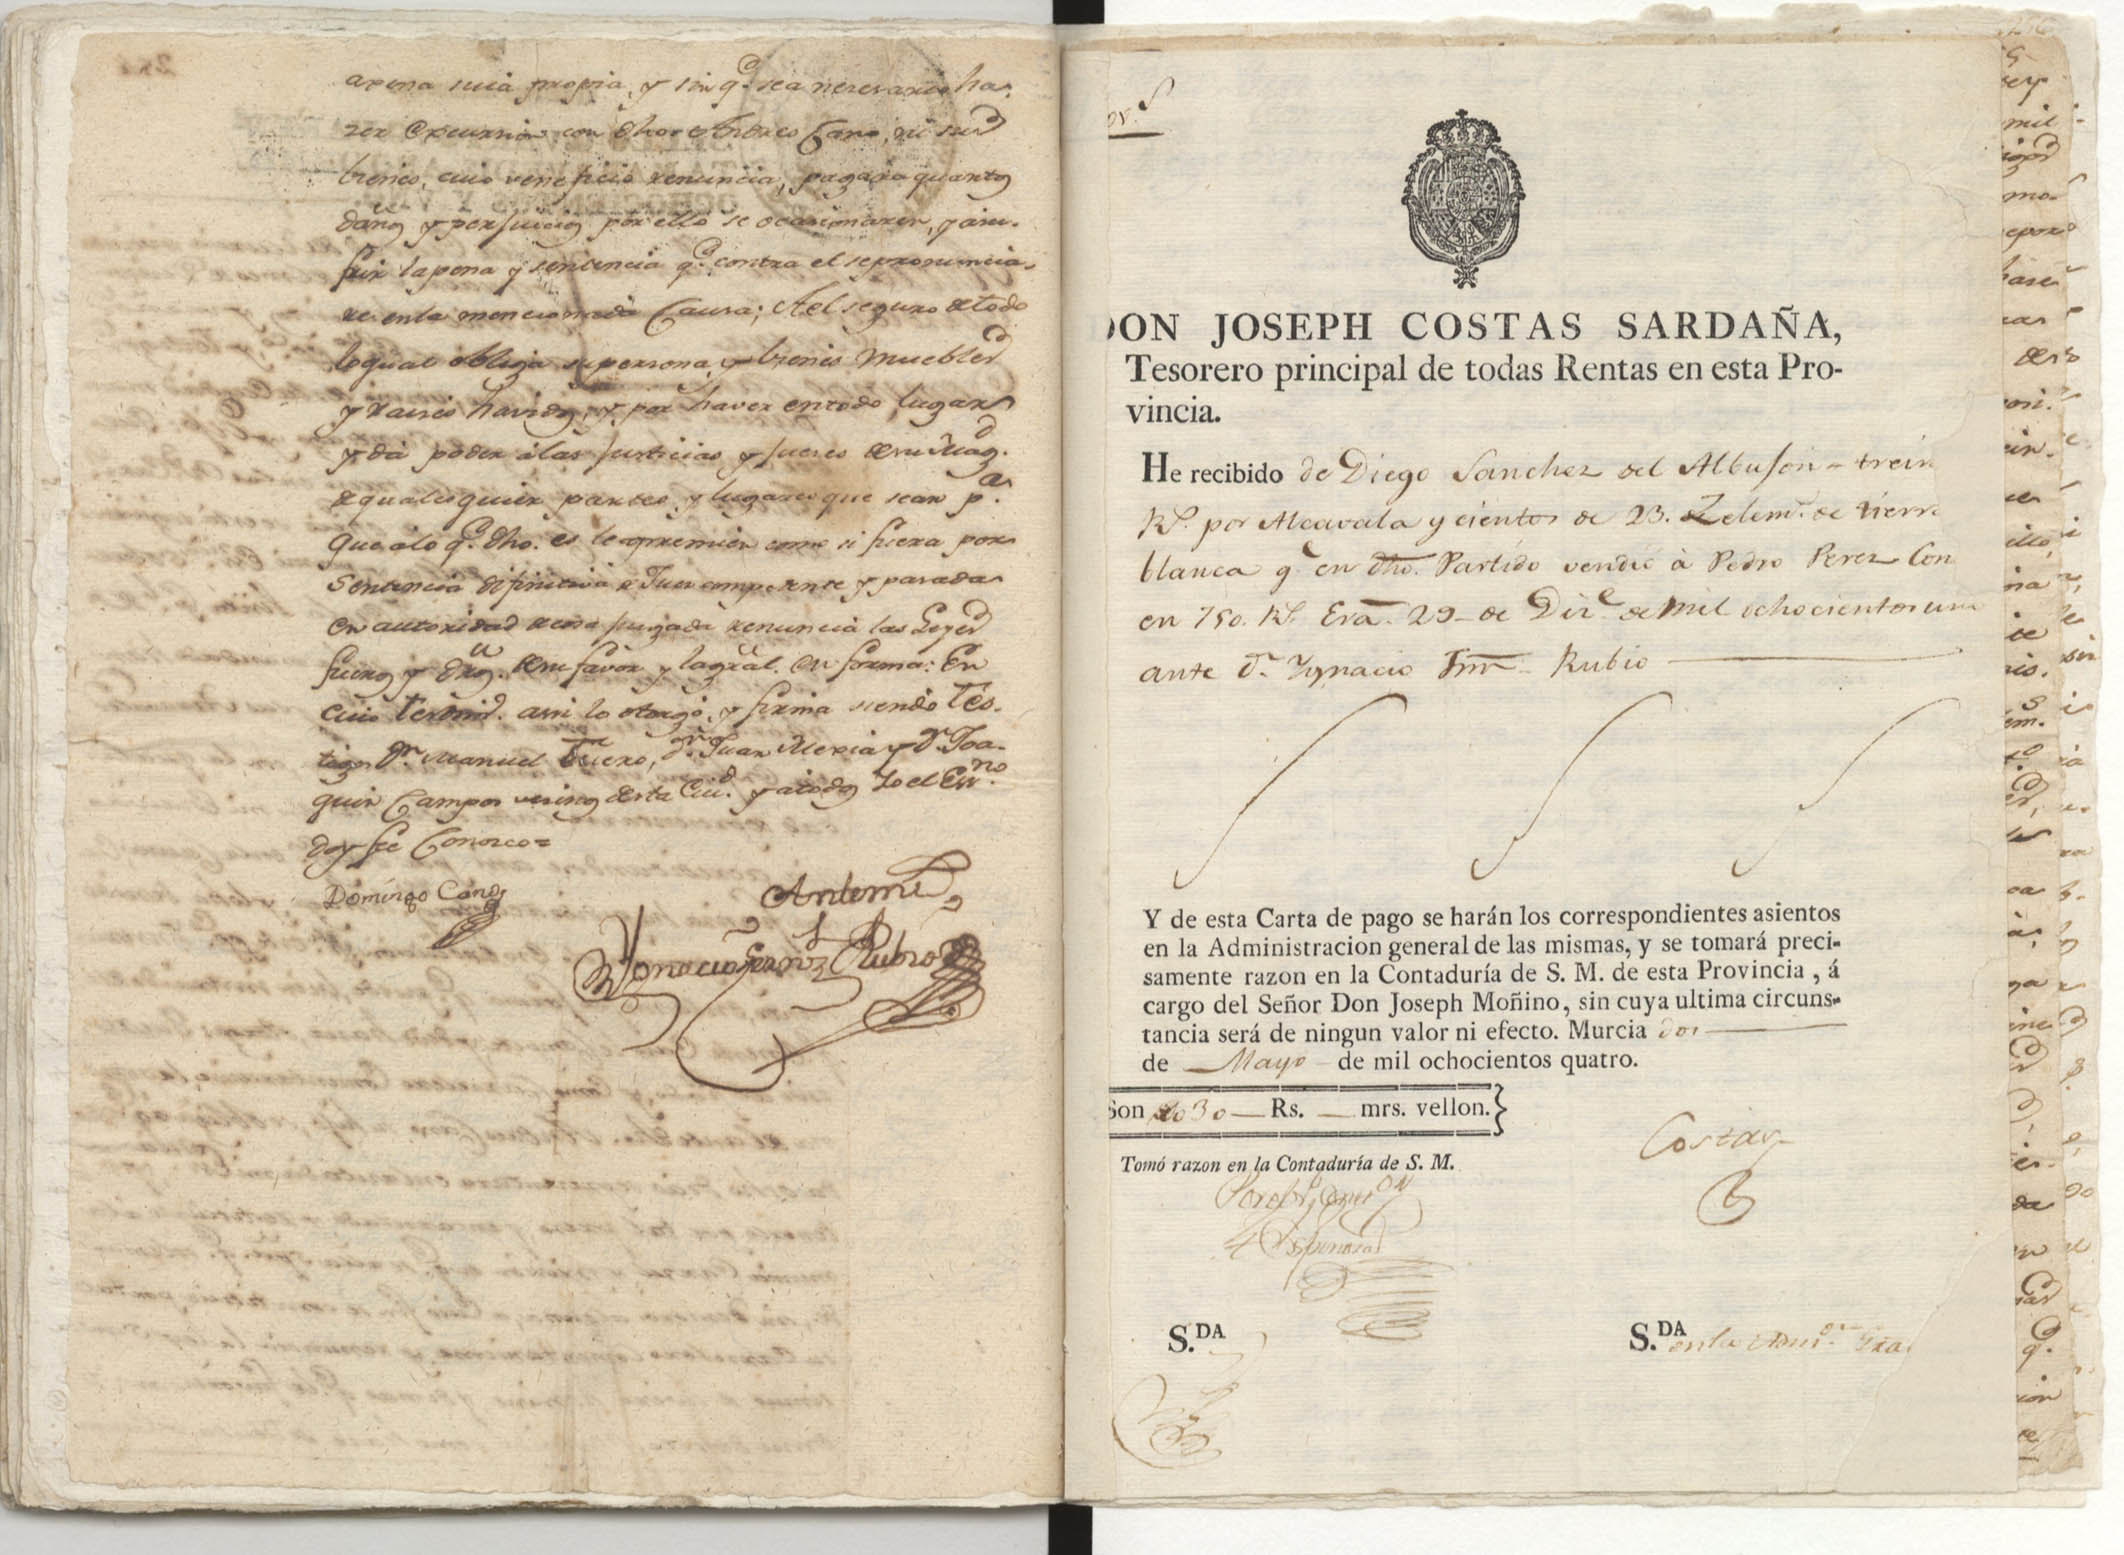 Registro de Ignacio Fernández Rubio, Murcia de 1801.